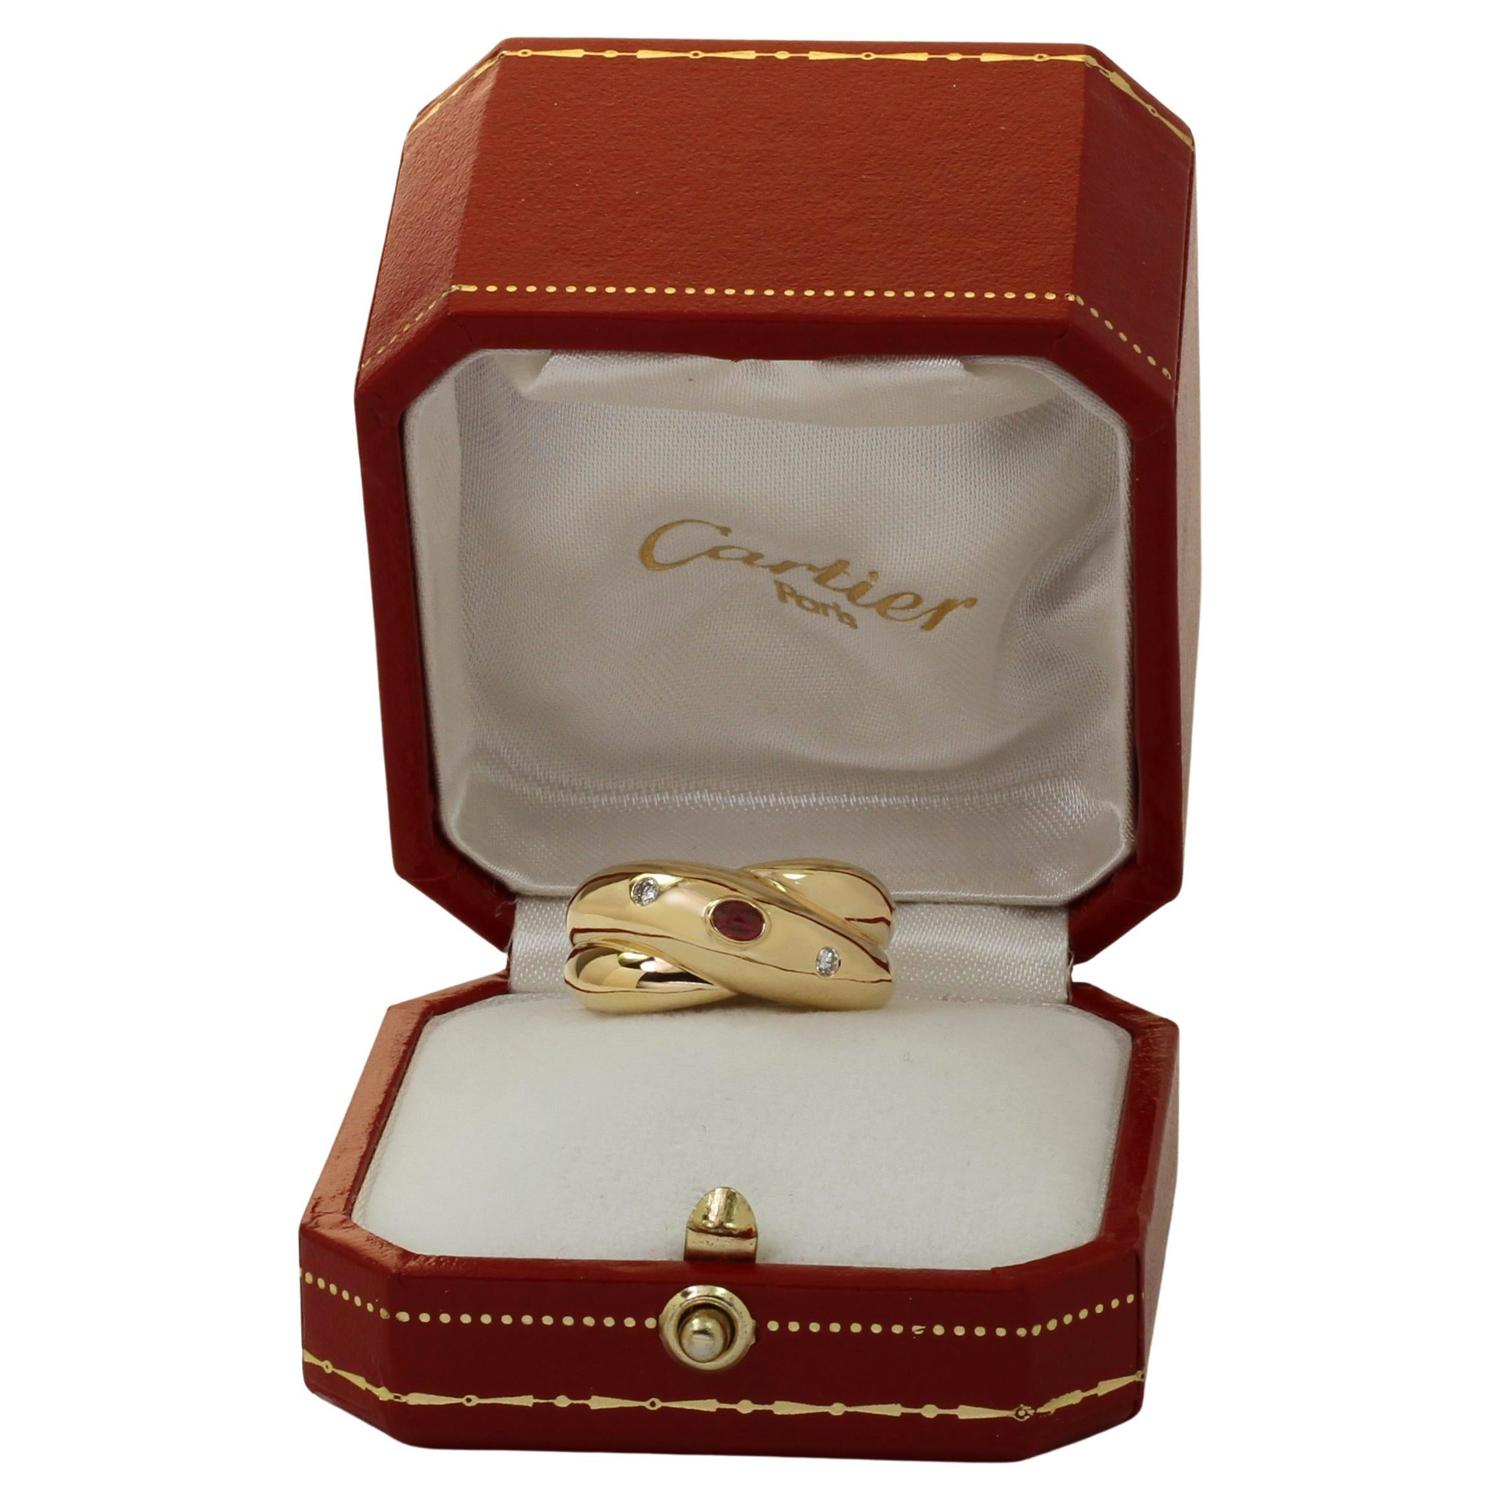 Dieser wunderschöne, authentische Cartier-Ring aus der eleganten Collection'S Colisee ist mit einem ineinander verschlungenen X-Band-Motiv aus 18 Karat Gelbgold und einer Lünette mit einem ovalen Rubin als Cabochon und zwei runden Brillanten D-E-F